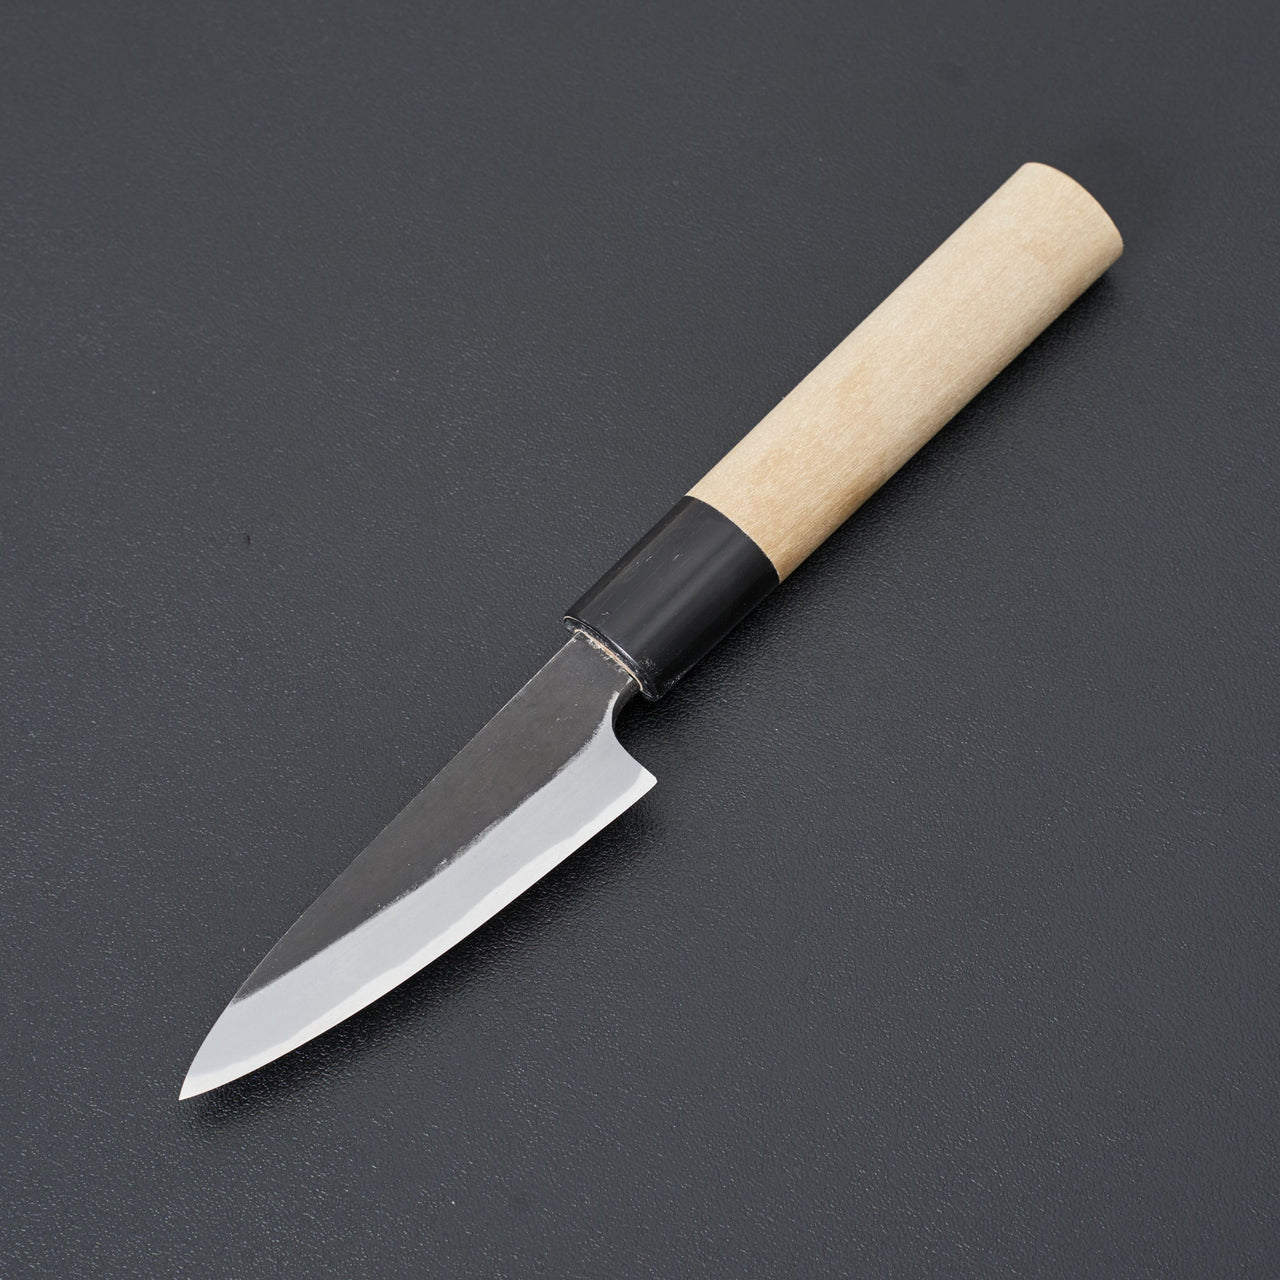 Hinoura Ajikataya Shirogami 2 Kurouchi Petty 90mm-Knife-Hinoura-Carbon Knife Co